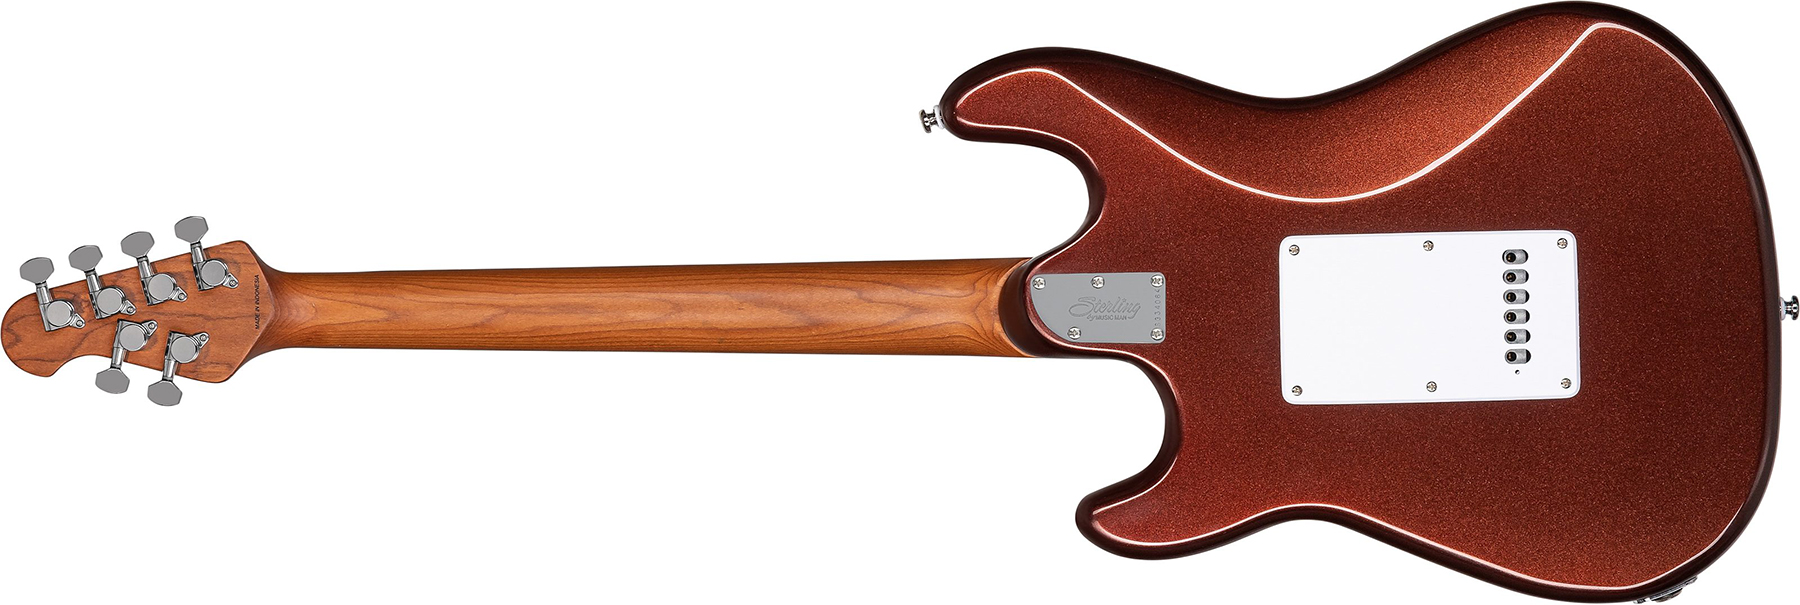 Sterling By Musicman Cutlass Ct50hss Trem Rw - Dropped Copper - Elektrische gitaar in Str-vorm - Variation 1